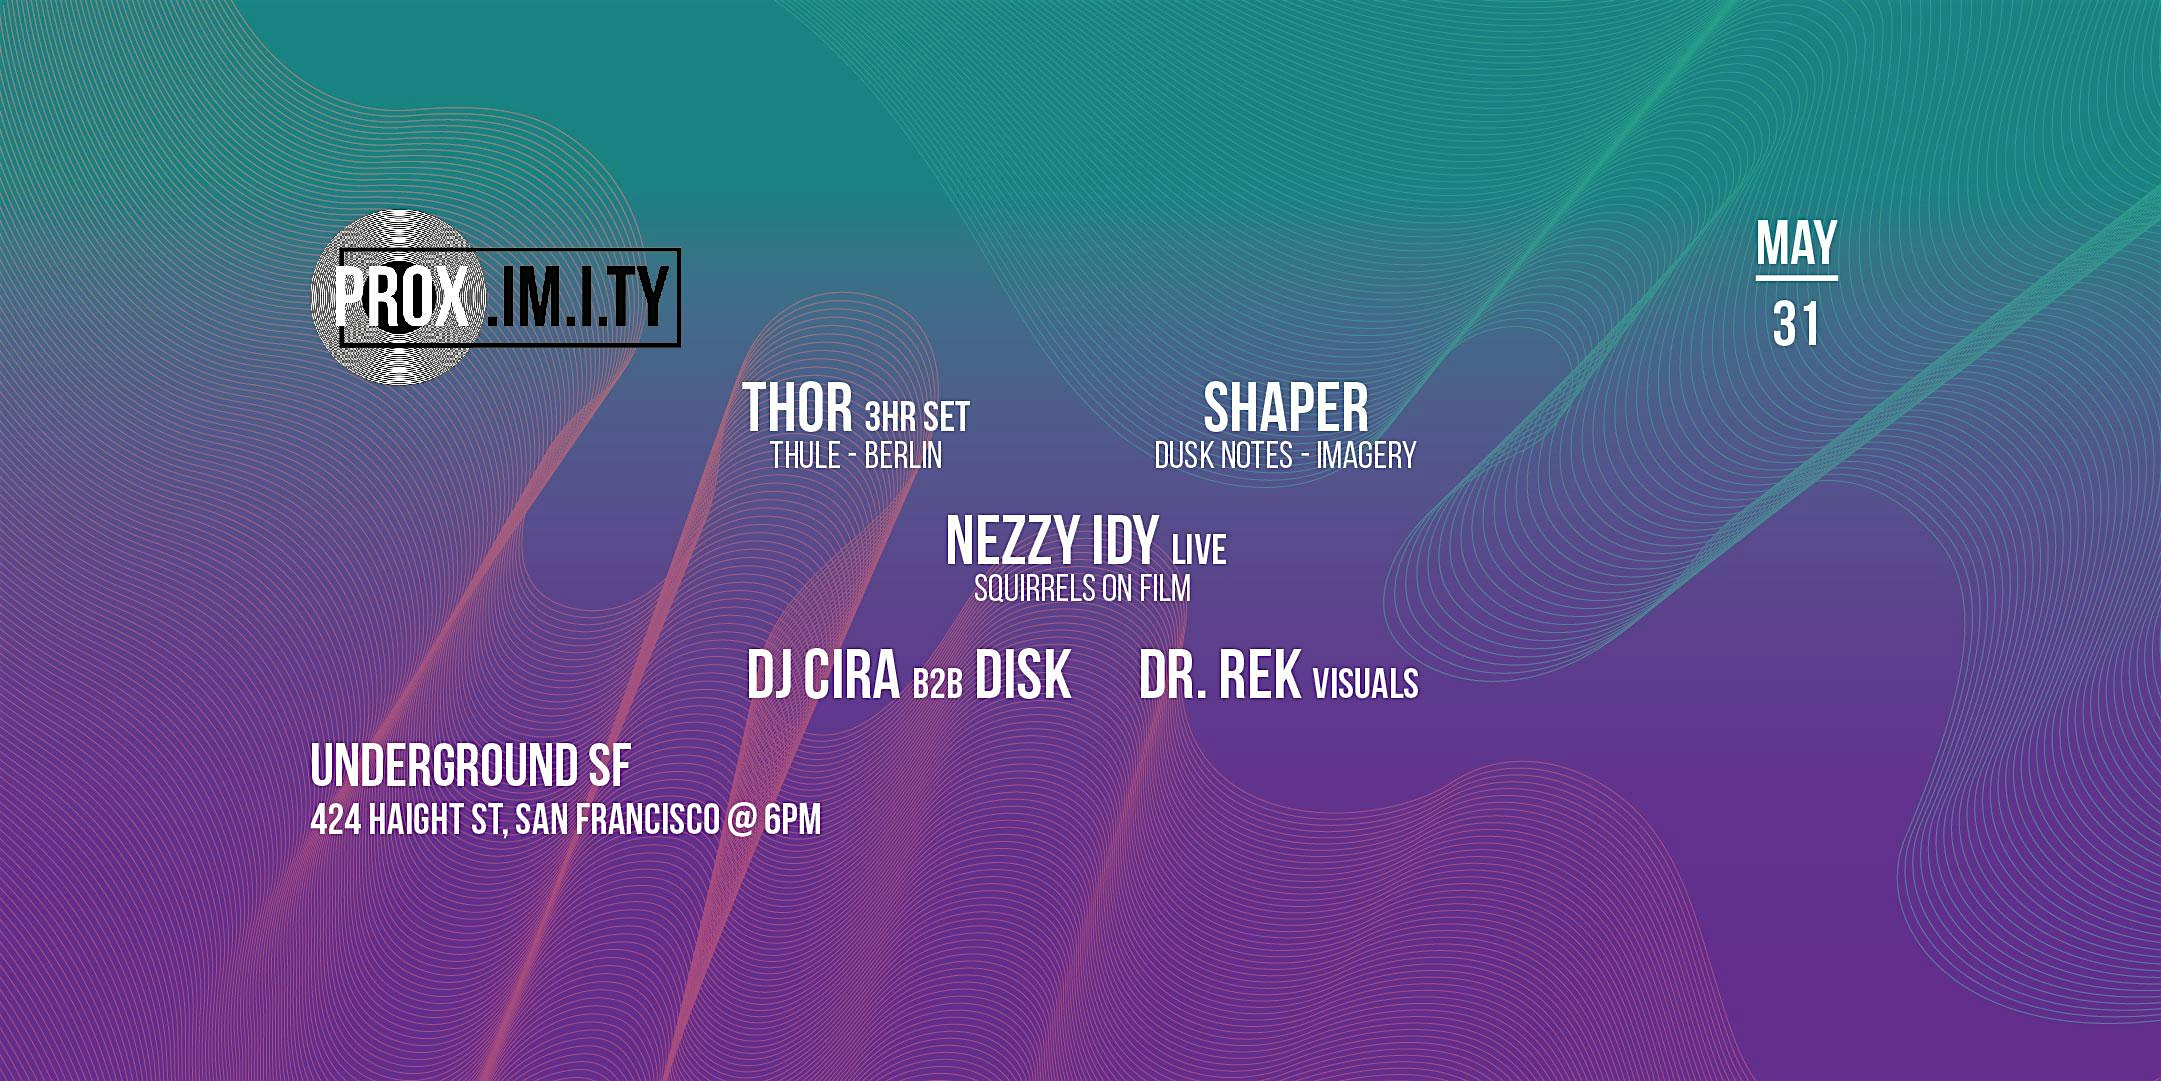 PROX. w\/\/ Thor - Shaper - Nezzy Idy LIVE - DJ Cira b2b Disk - Vsls: Dr.Rek